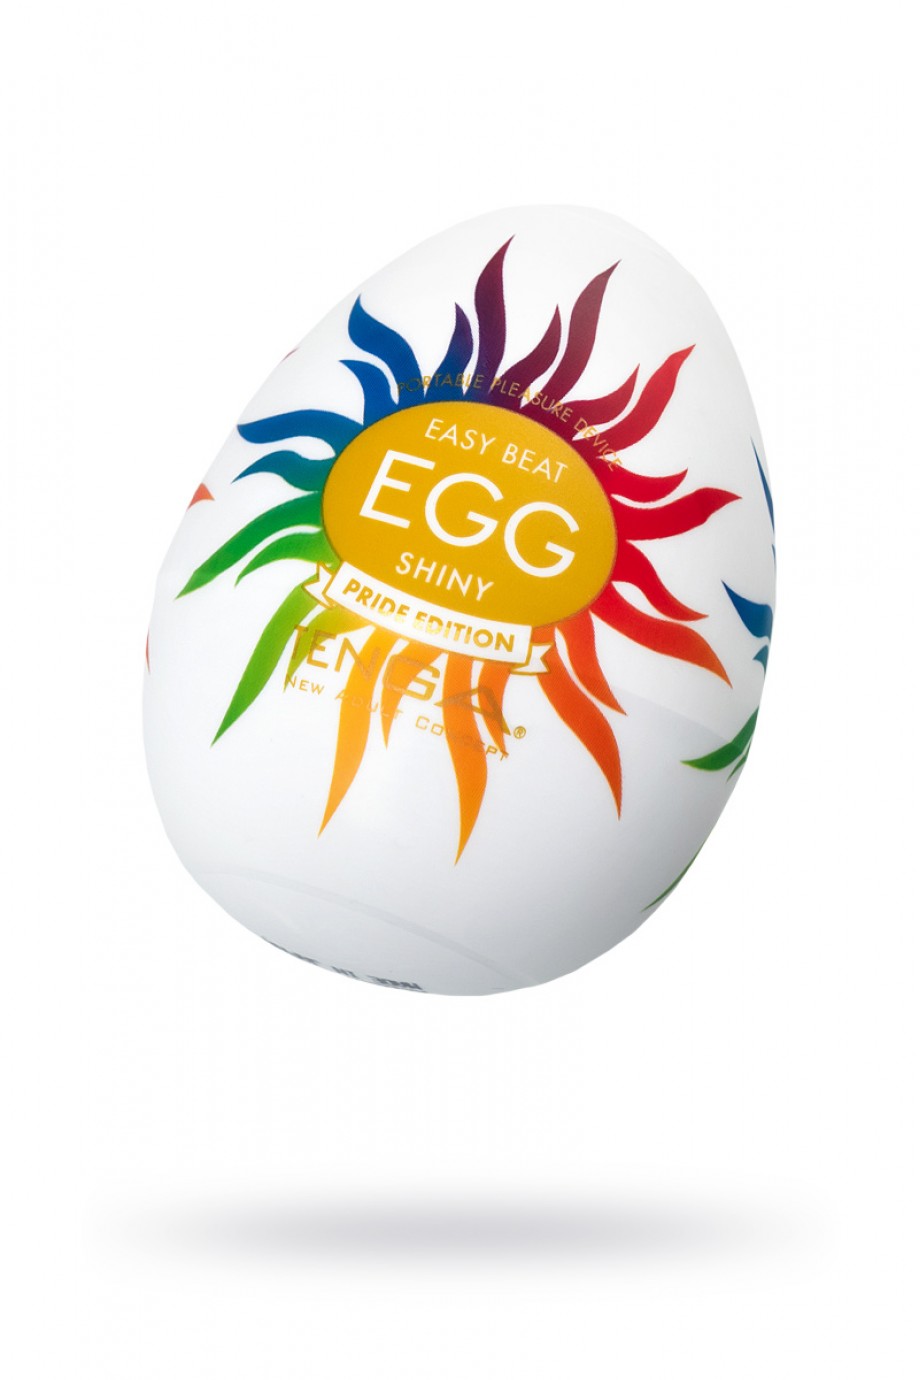 TENGA Egg Shiny Pride Edition